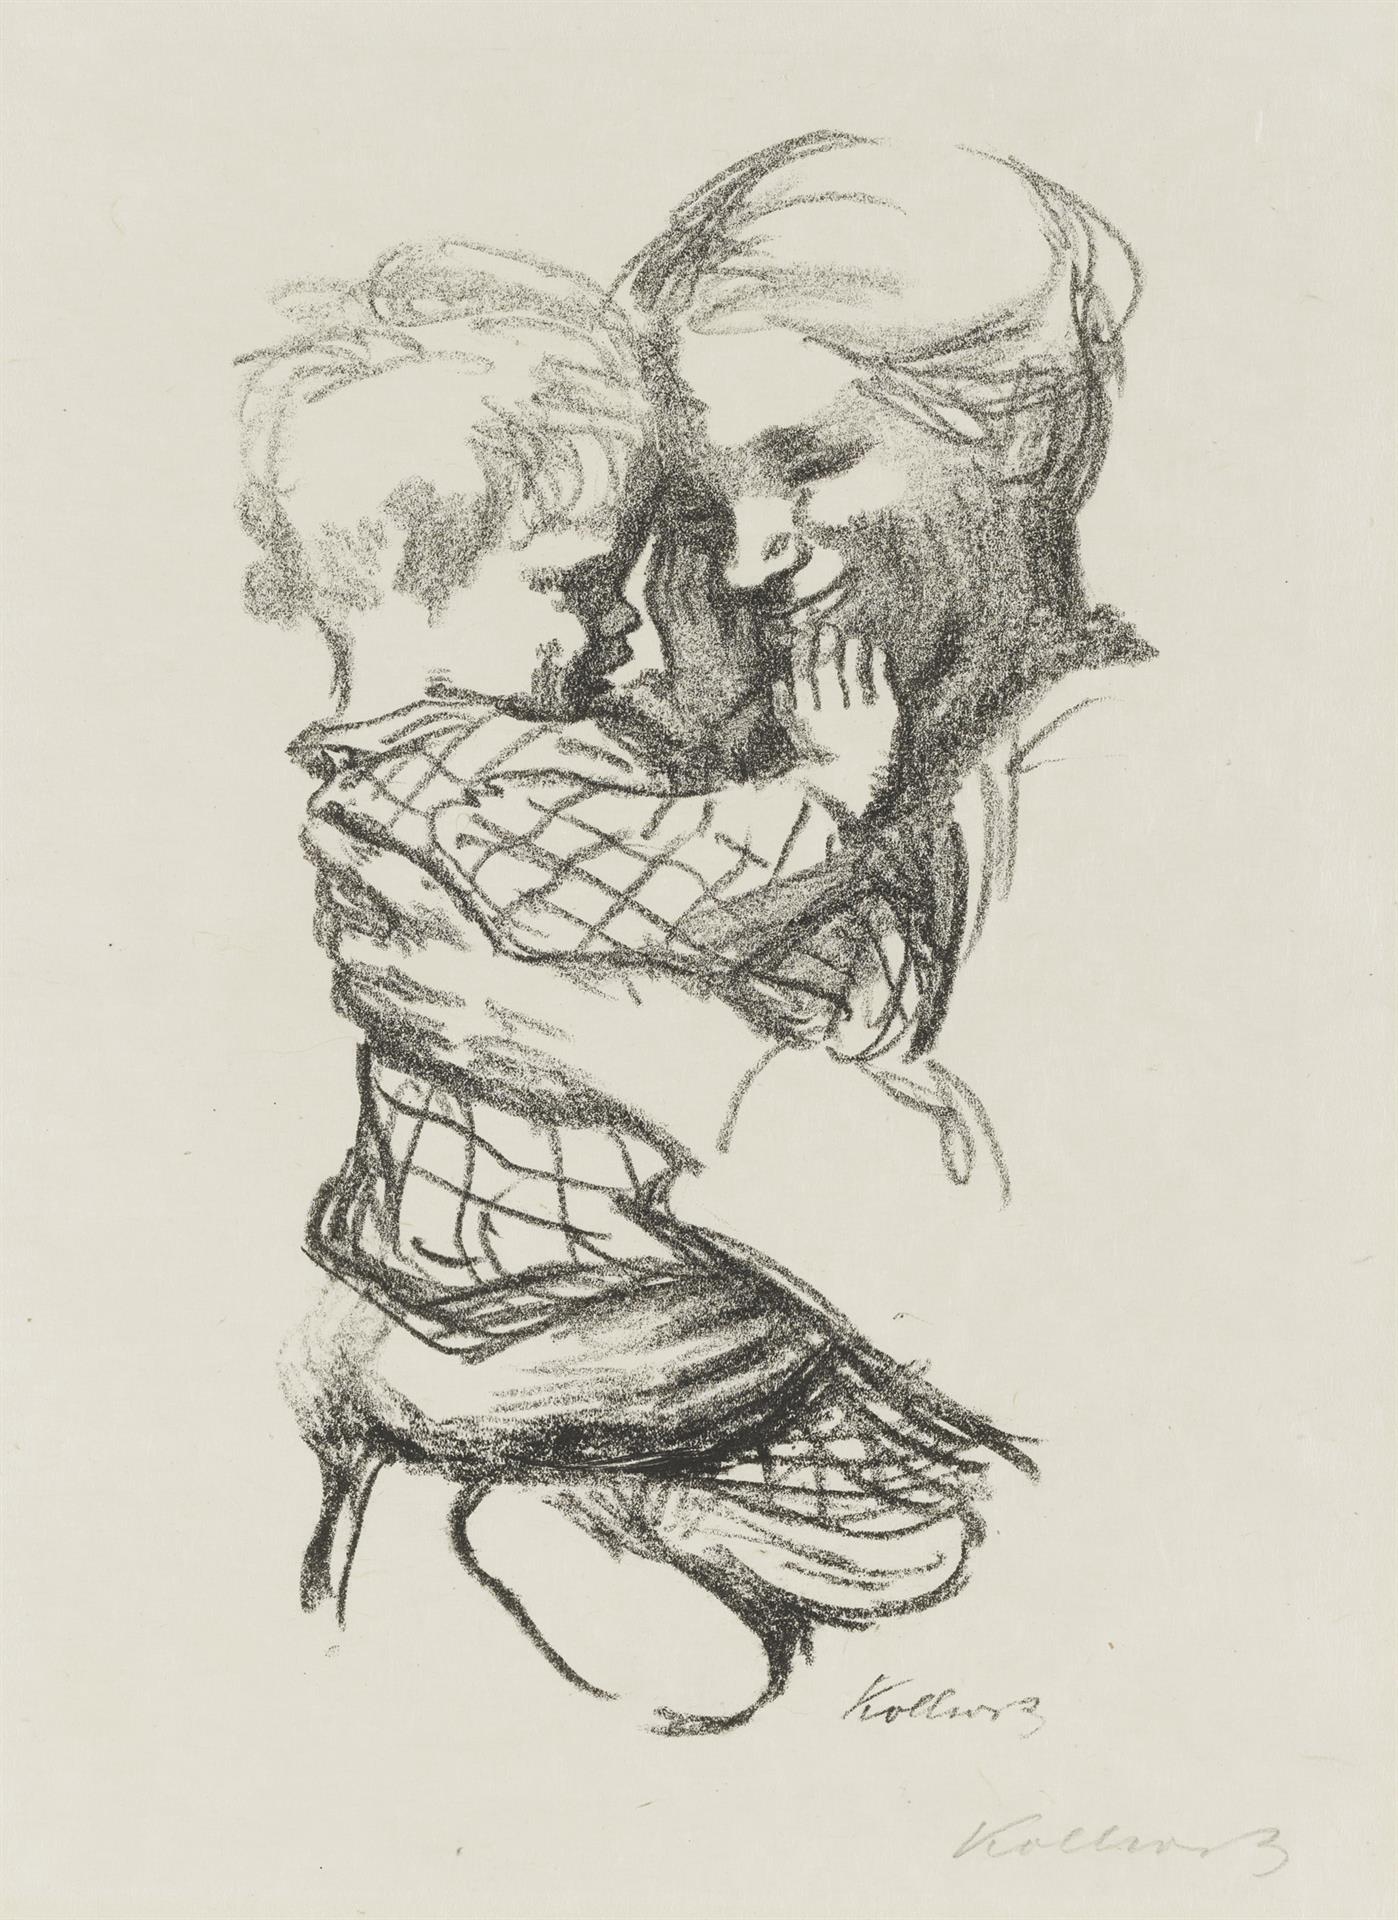 Käthe Kollwitz, Mère avec son enfant dans les bras, version finale, 1916, lithographie au crayon (report), Kn 136, Collection Kollwitz de Cologne © Käthe Kollwitz Museum Köln